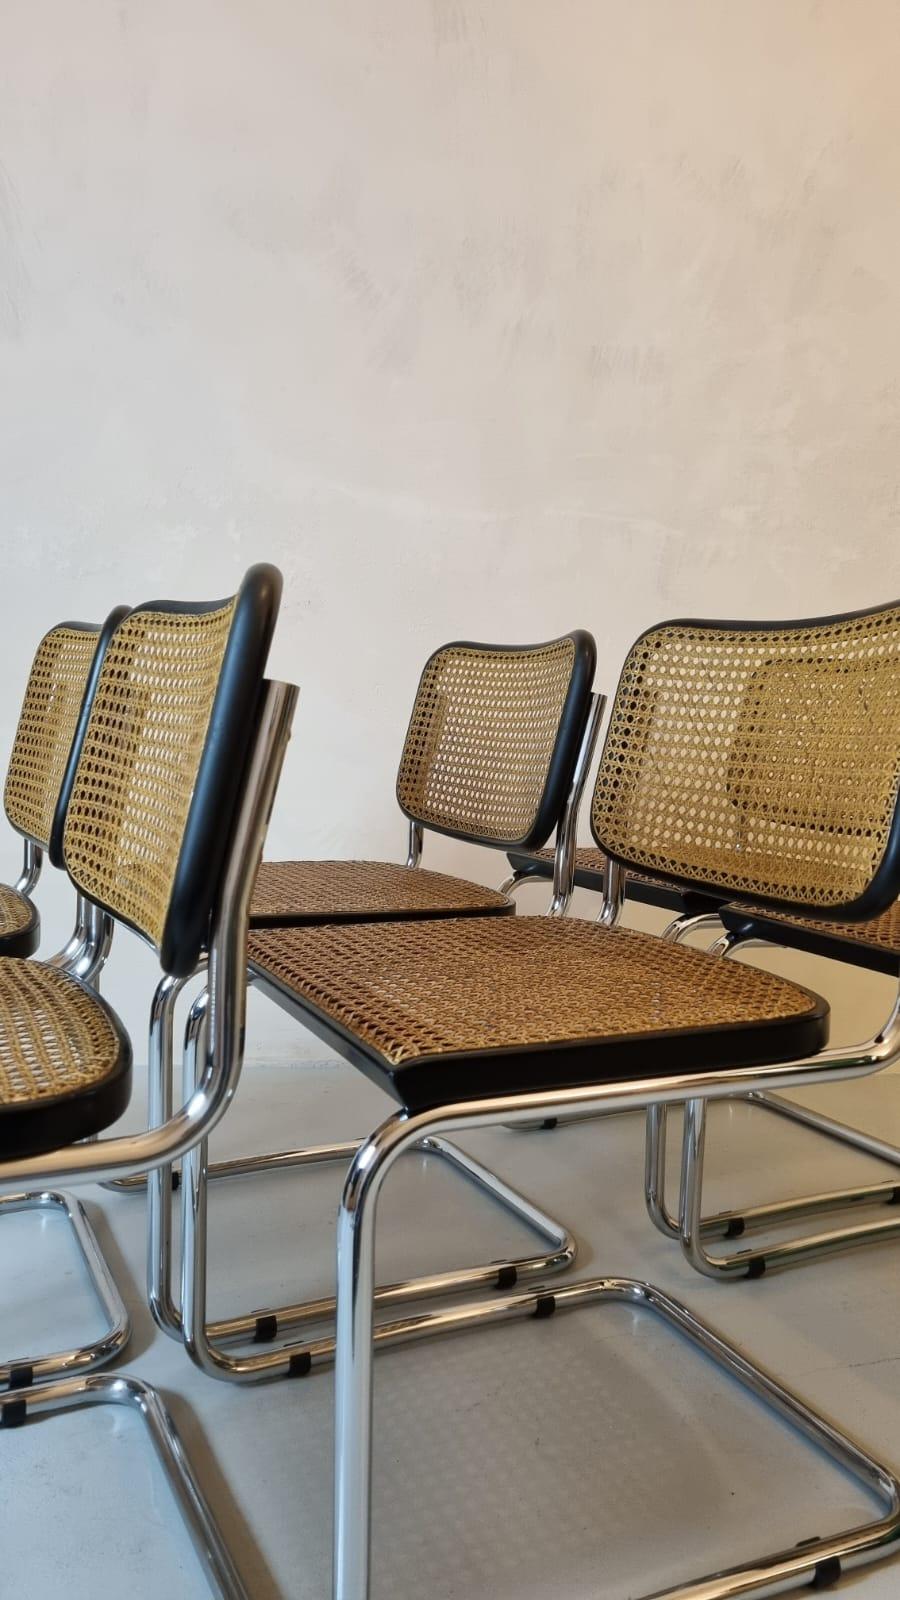 Ensemble de 6 chaises Cesca conçues par Marcel Breuer, produites par Gavina 1960.
Les chaises présentent de légères traces d'usure, les sièges sont restaurés.
La rencontre entre la paille de Vienne et le tube de métal, la tradition et l'innovation,